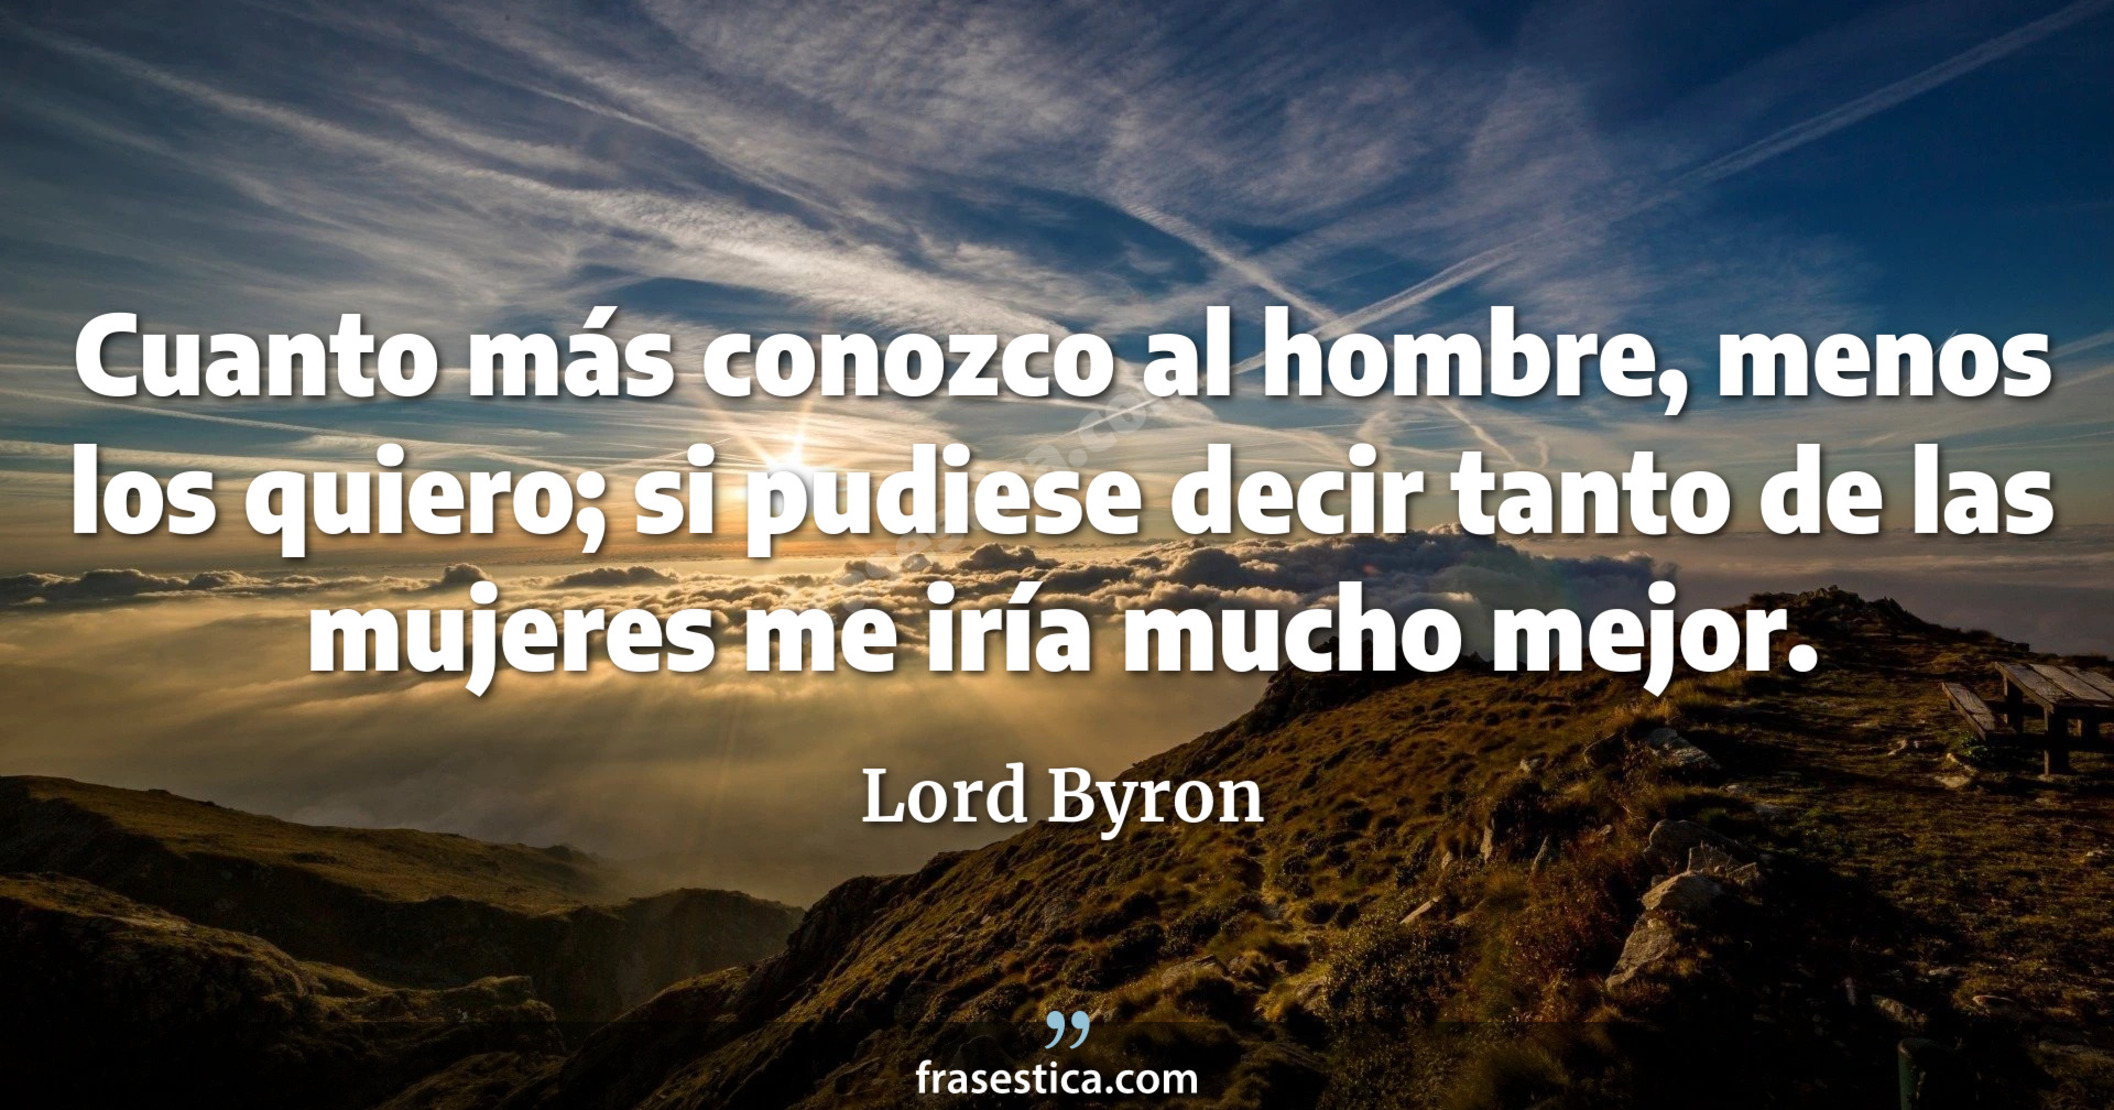 Cuanto más conozco al hombre, menos los quiero; si pudiese decir tanto de las mujeres me iría mucho mejor. - Lord Byron